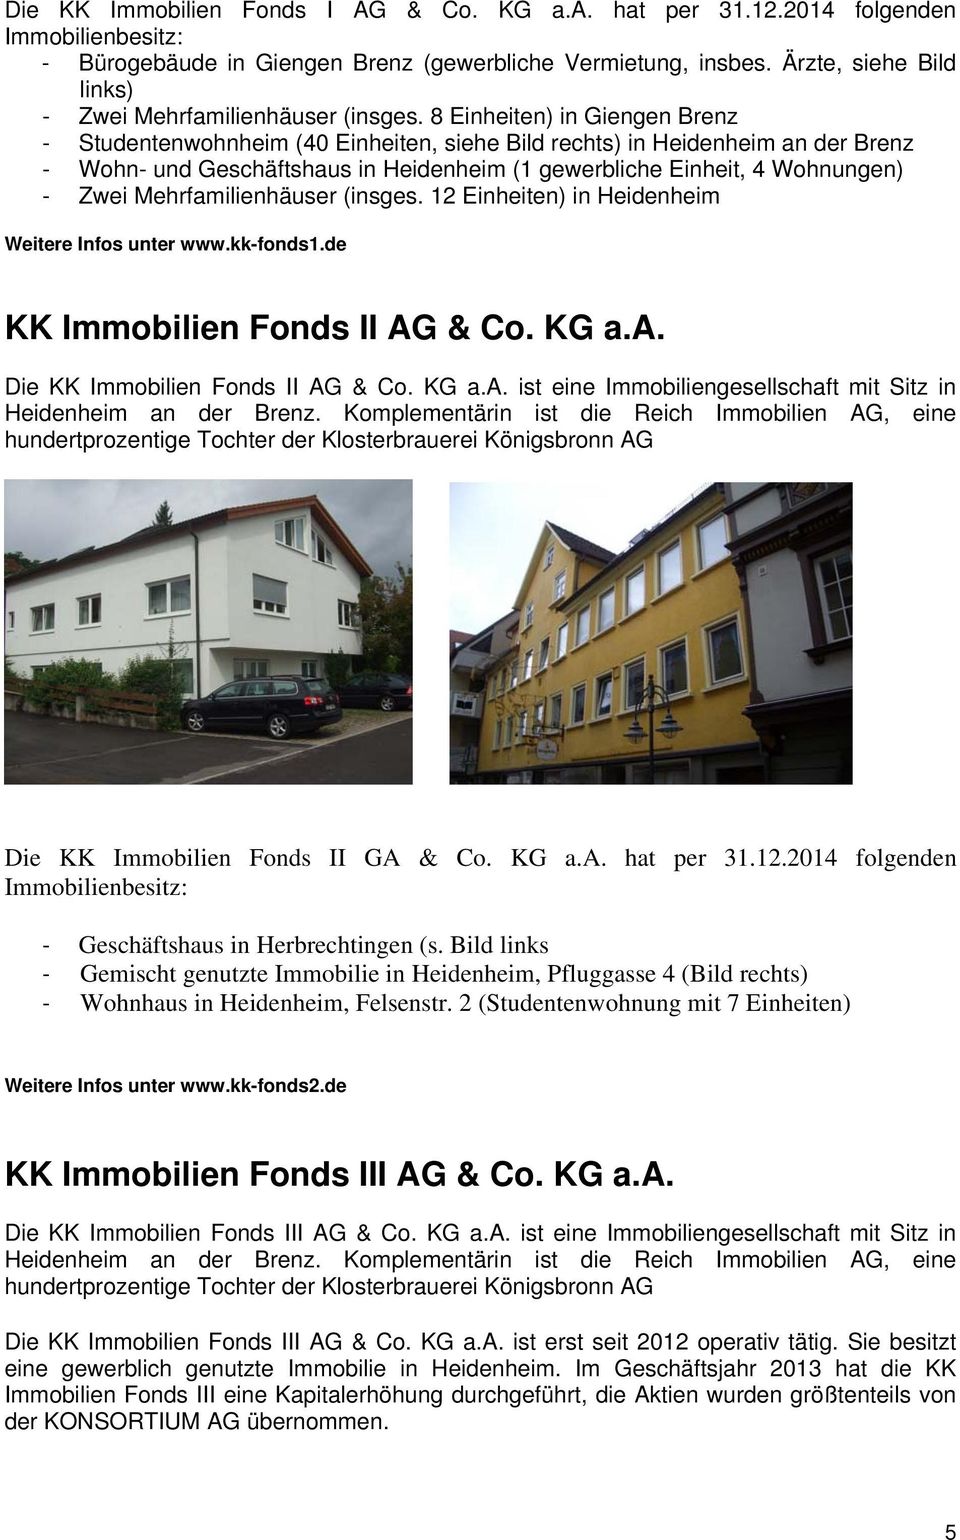 8 Einheiten) in Giengen Brenz - Studentenwohnheim (40 Einheiten, siehe Bild rechts) in Heidenheim an der Brenz - Wohn- und Geschäftshaus in Heidenheim (1 gewerbliche Einheit, 4 Wohnungen) - Zwei